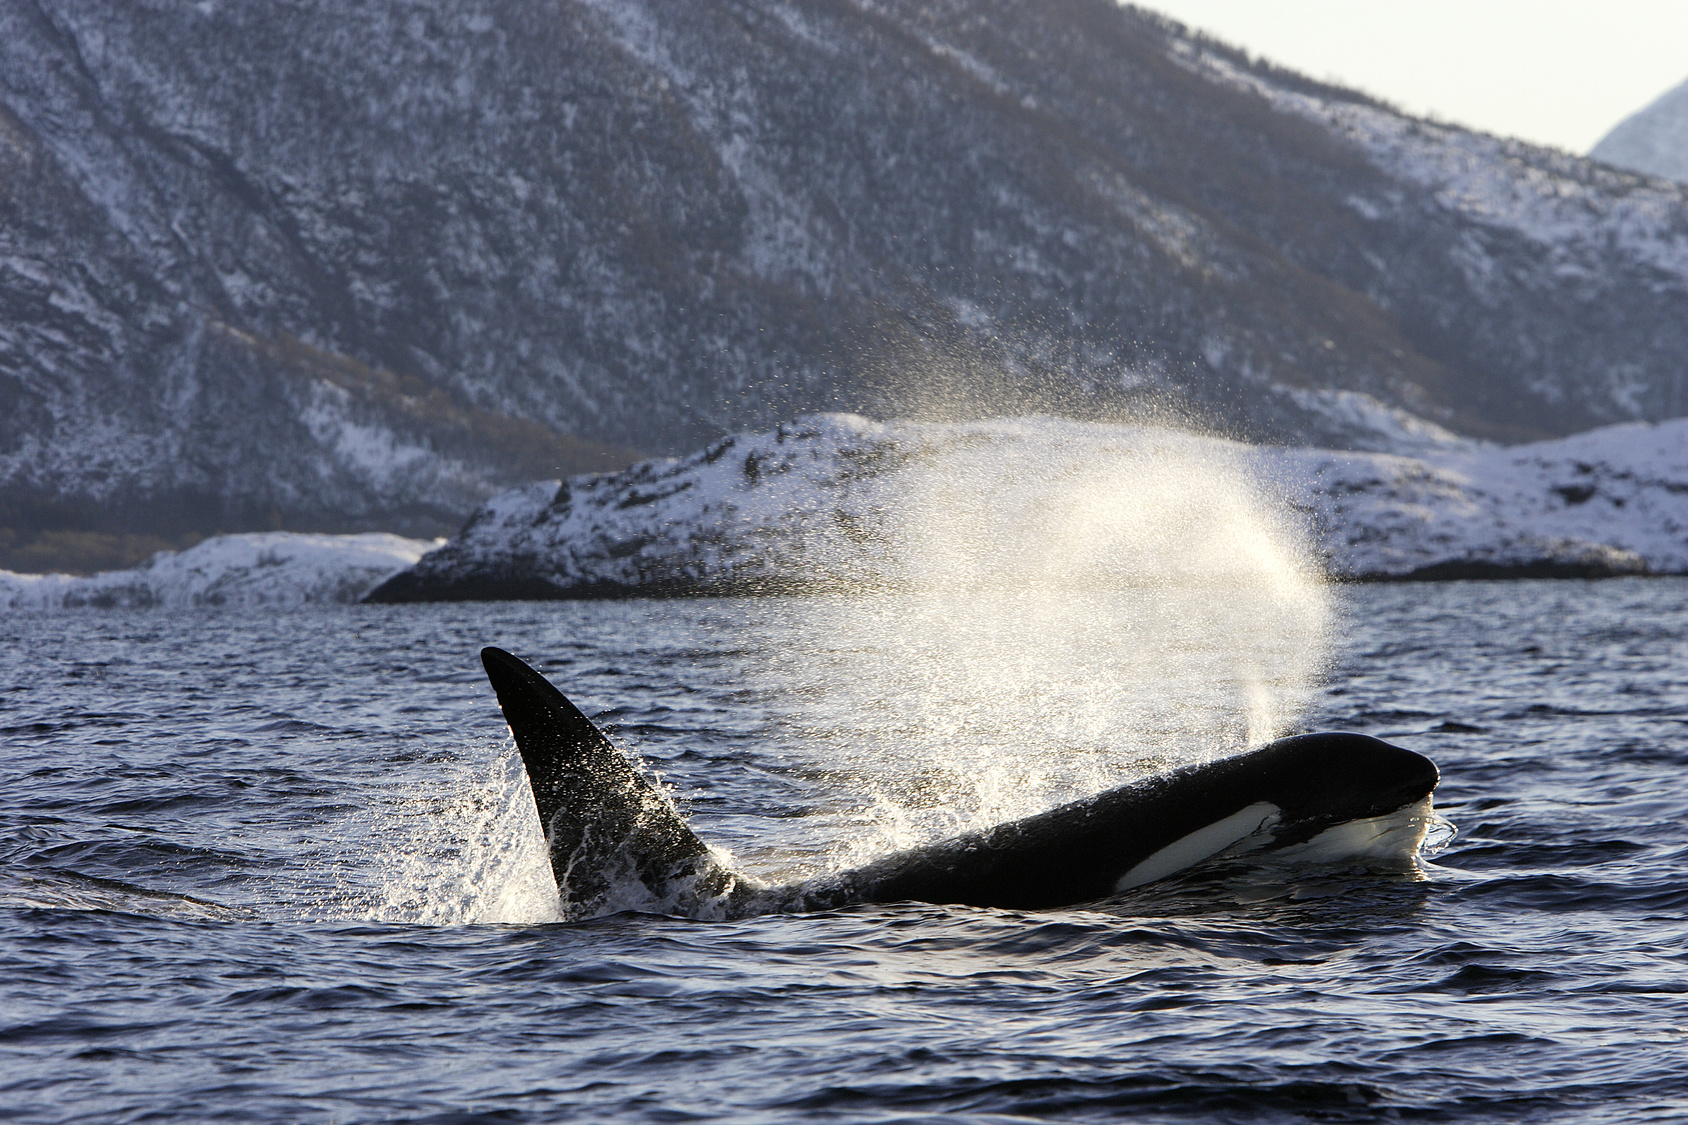 Les orques à l’état sauvage sont menacées par la pollution, notamment les PCB. © PIXATERRA, Fotolia